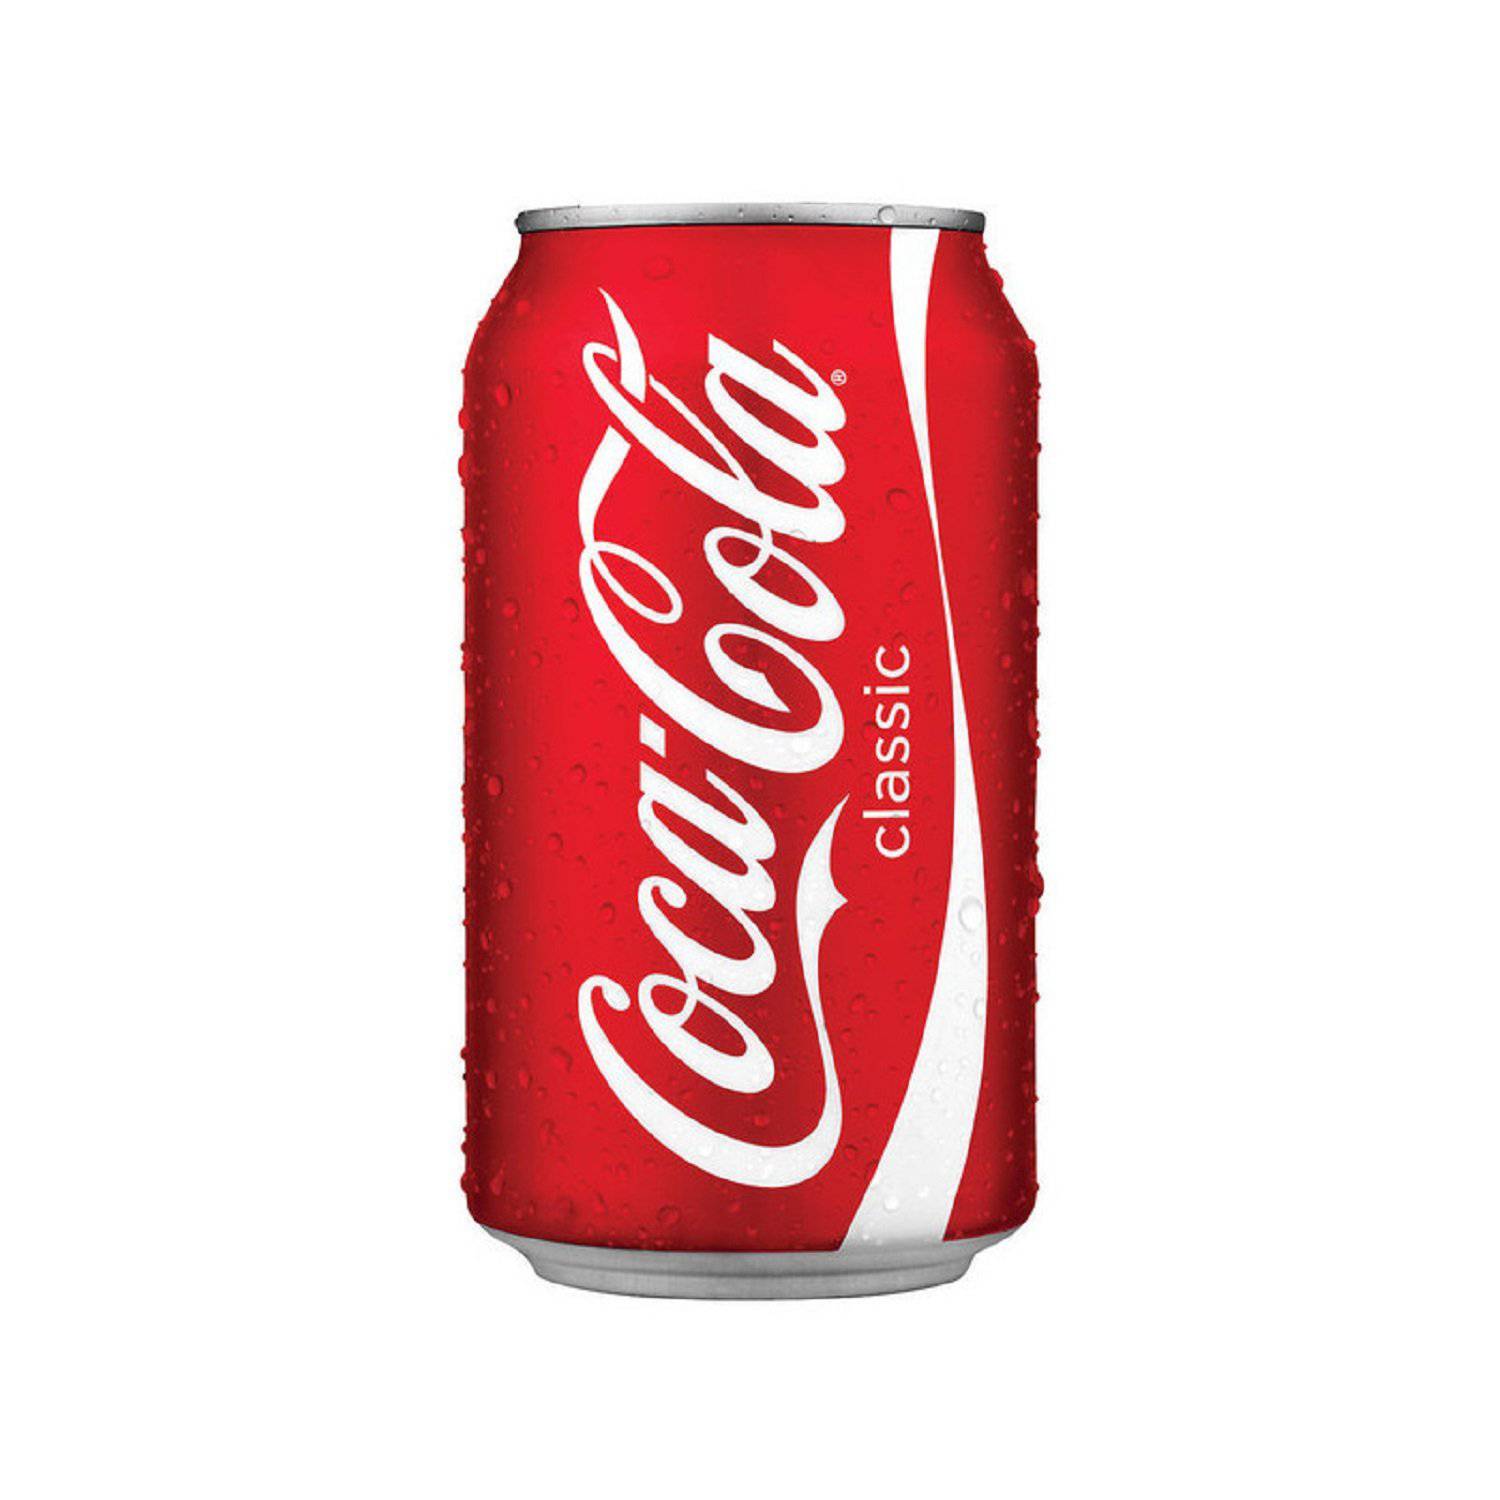 Gaseosa Coca Cola lata 355 ml.